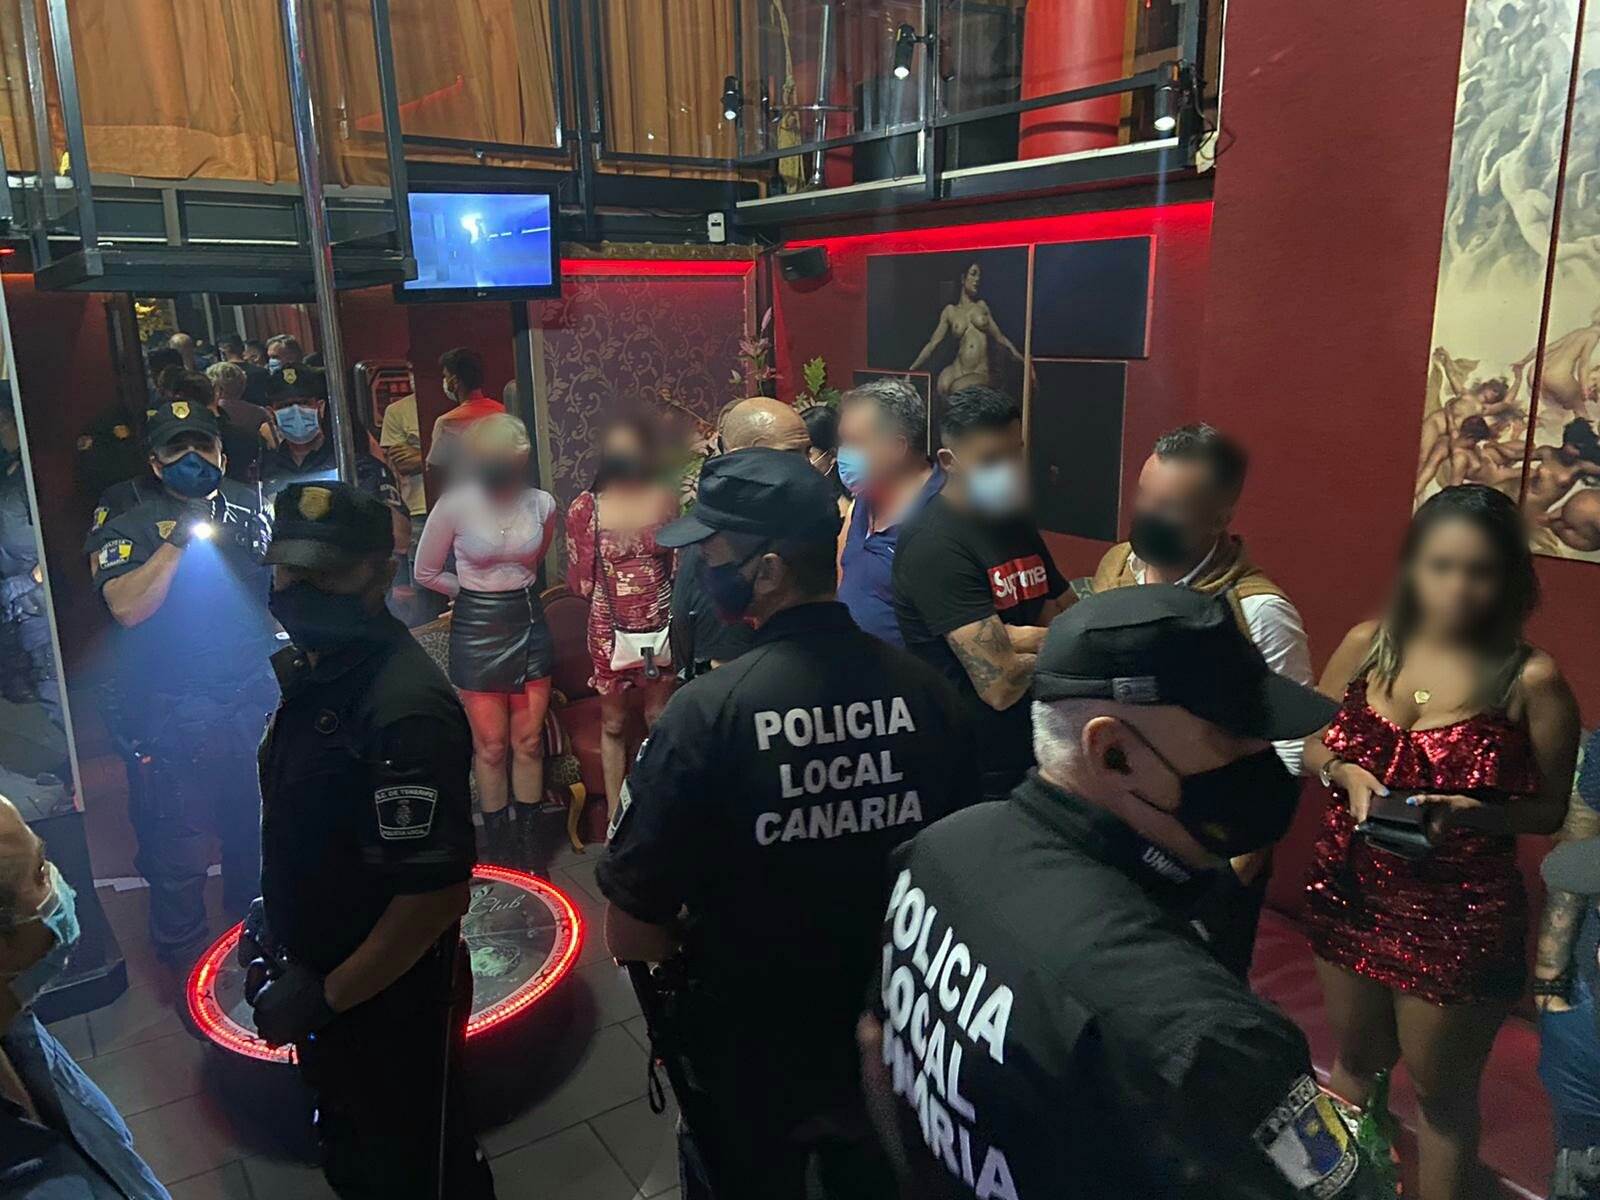  Fudbaleri uhapšeni u noćnom klubu: Prostitutke i droga svuda oko njih, klub će ih kazniti! 